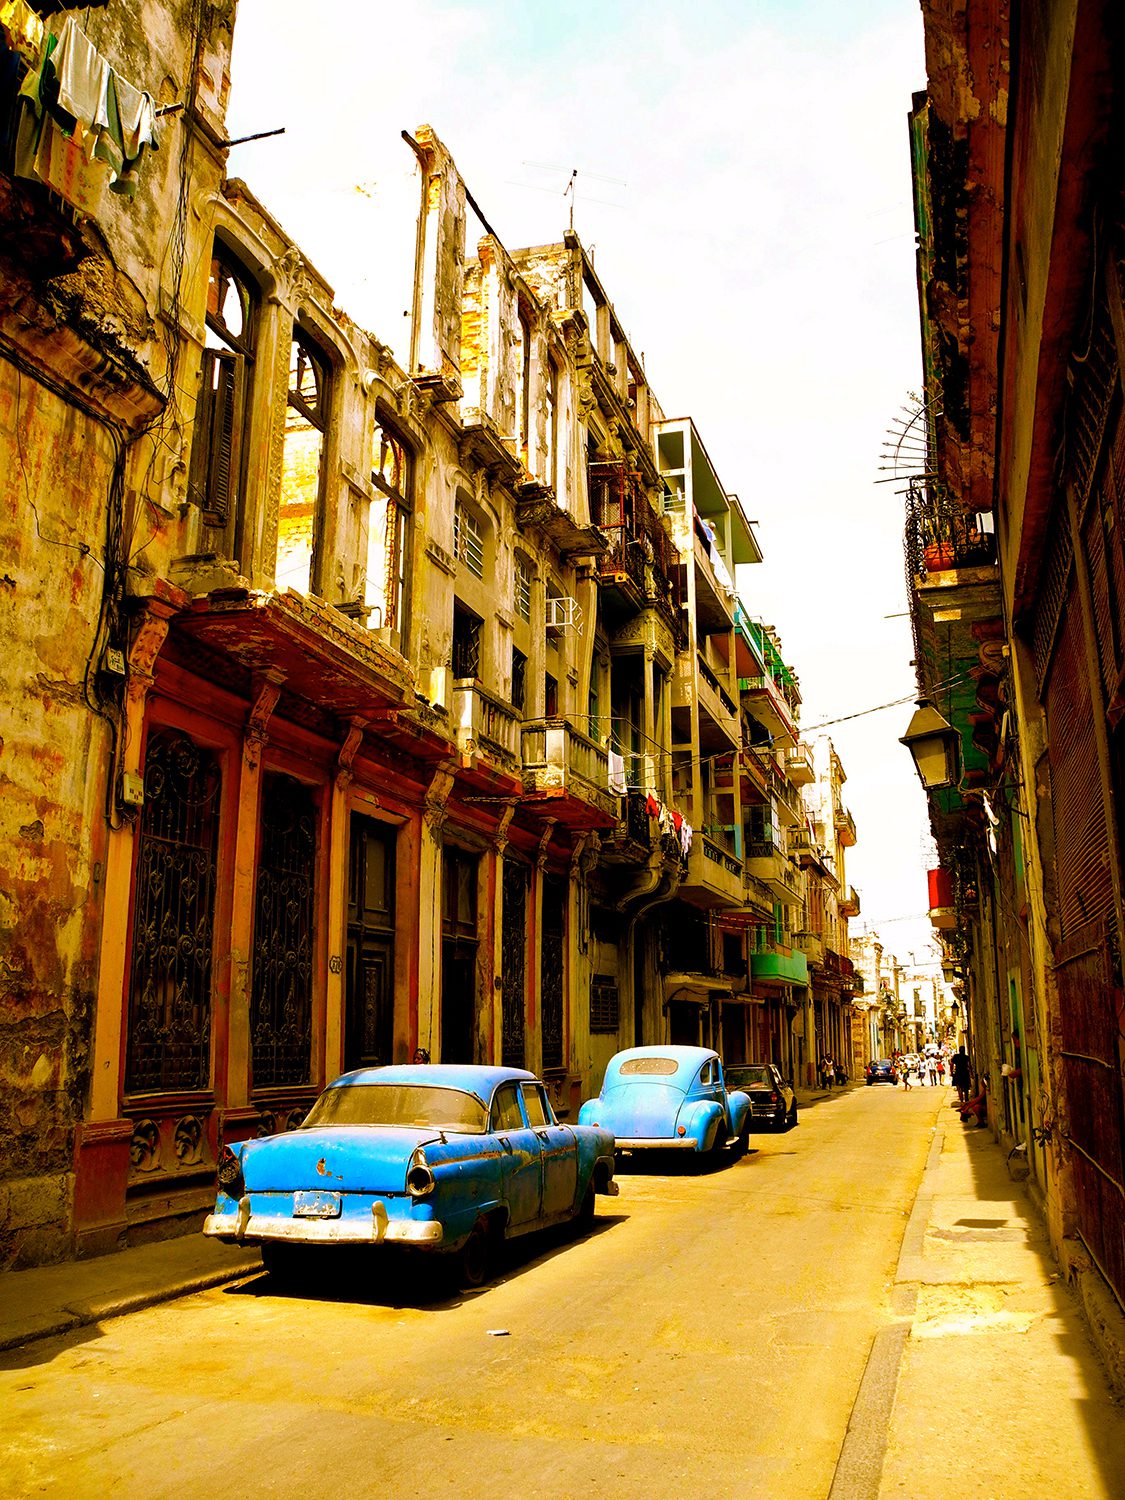 Classic cuban streets